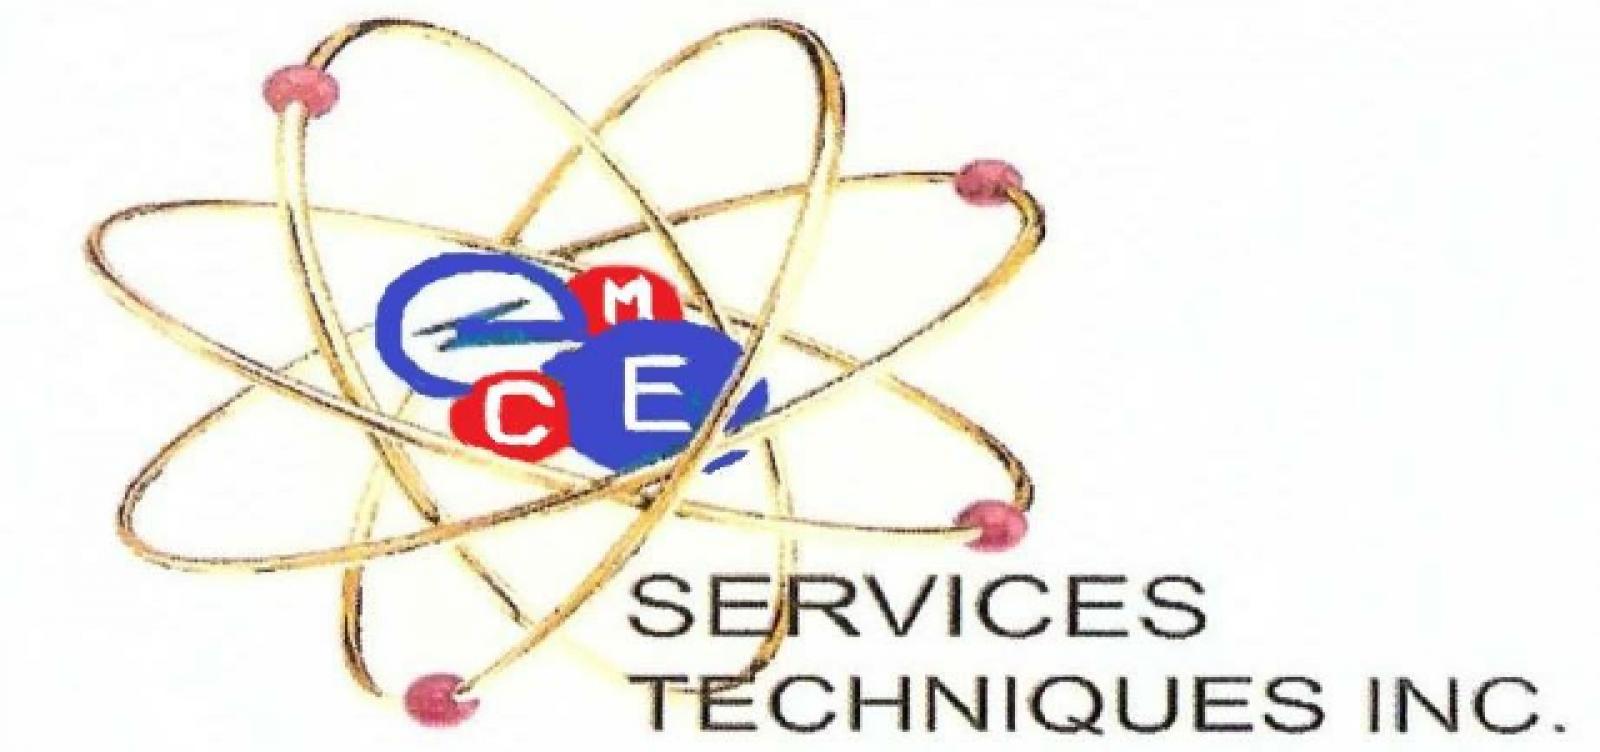 Electriciens MEC Services Techniques inc. Logo